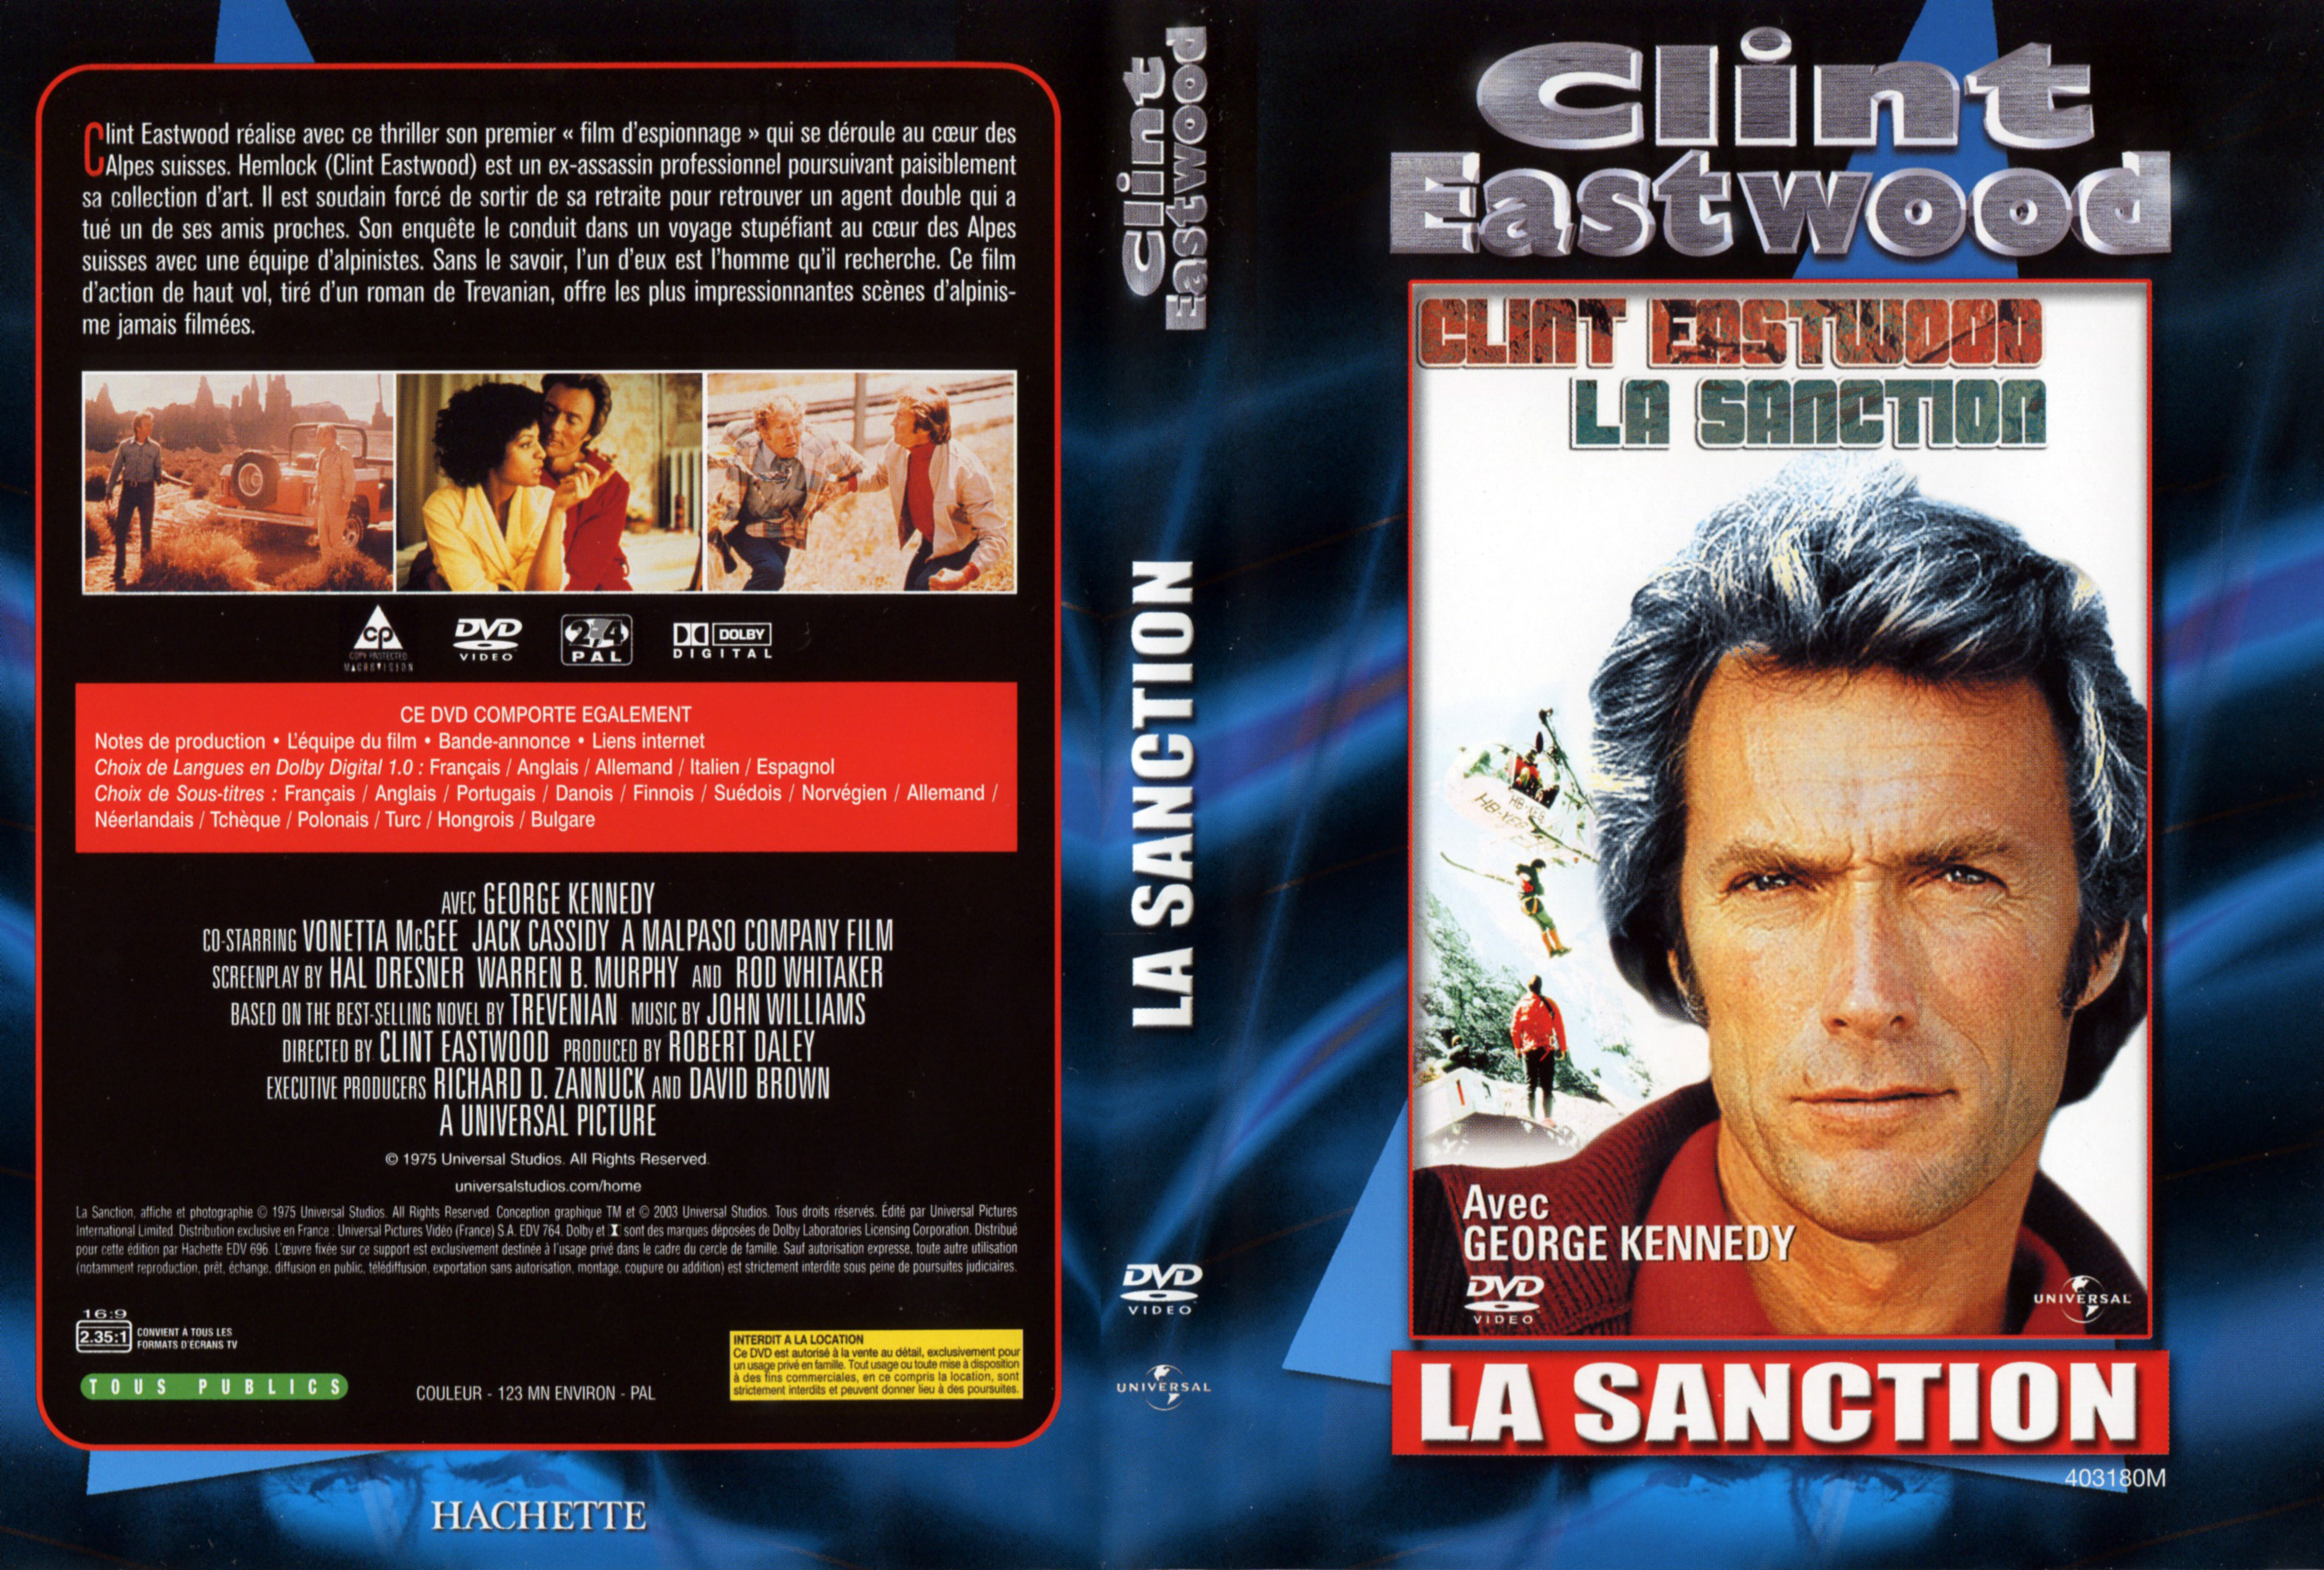 Jaquette DVD La sanction v3